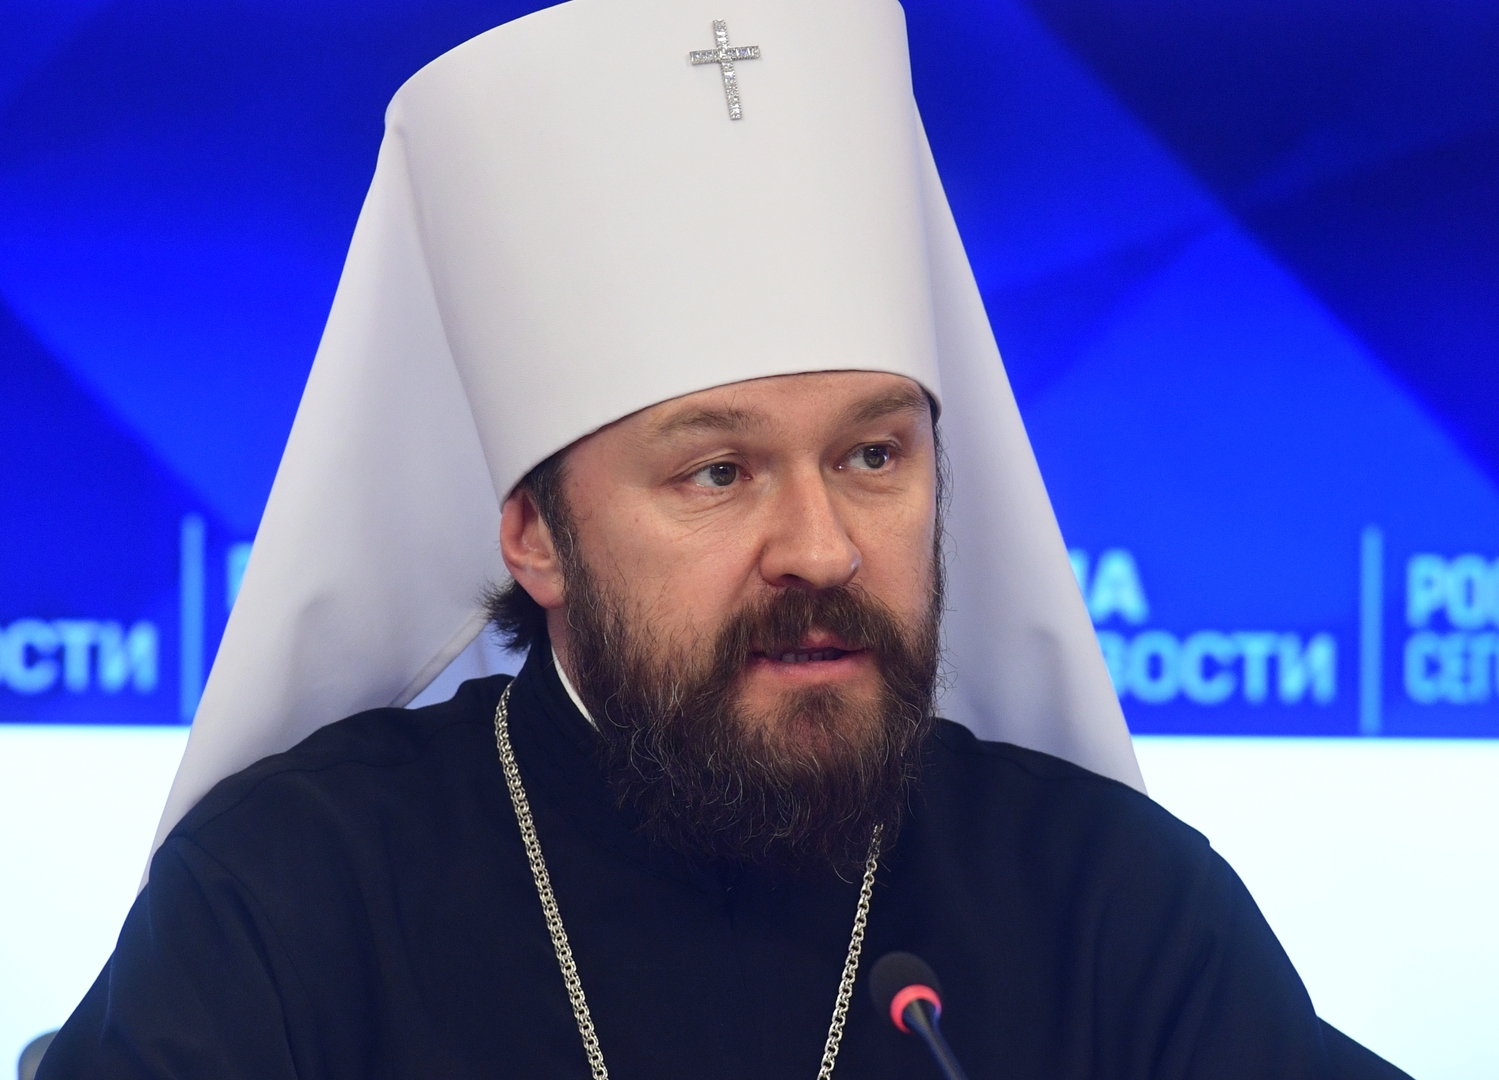 الكنيسة الأرثوذكسية الروسية: تحويل آيا صوفيا إلى مسجد سيمثل انتهاكا غير مقبول للحرية الدينية